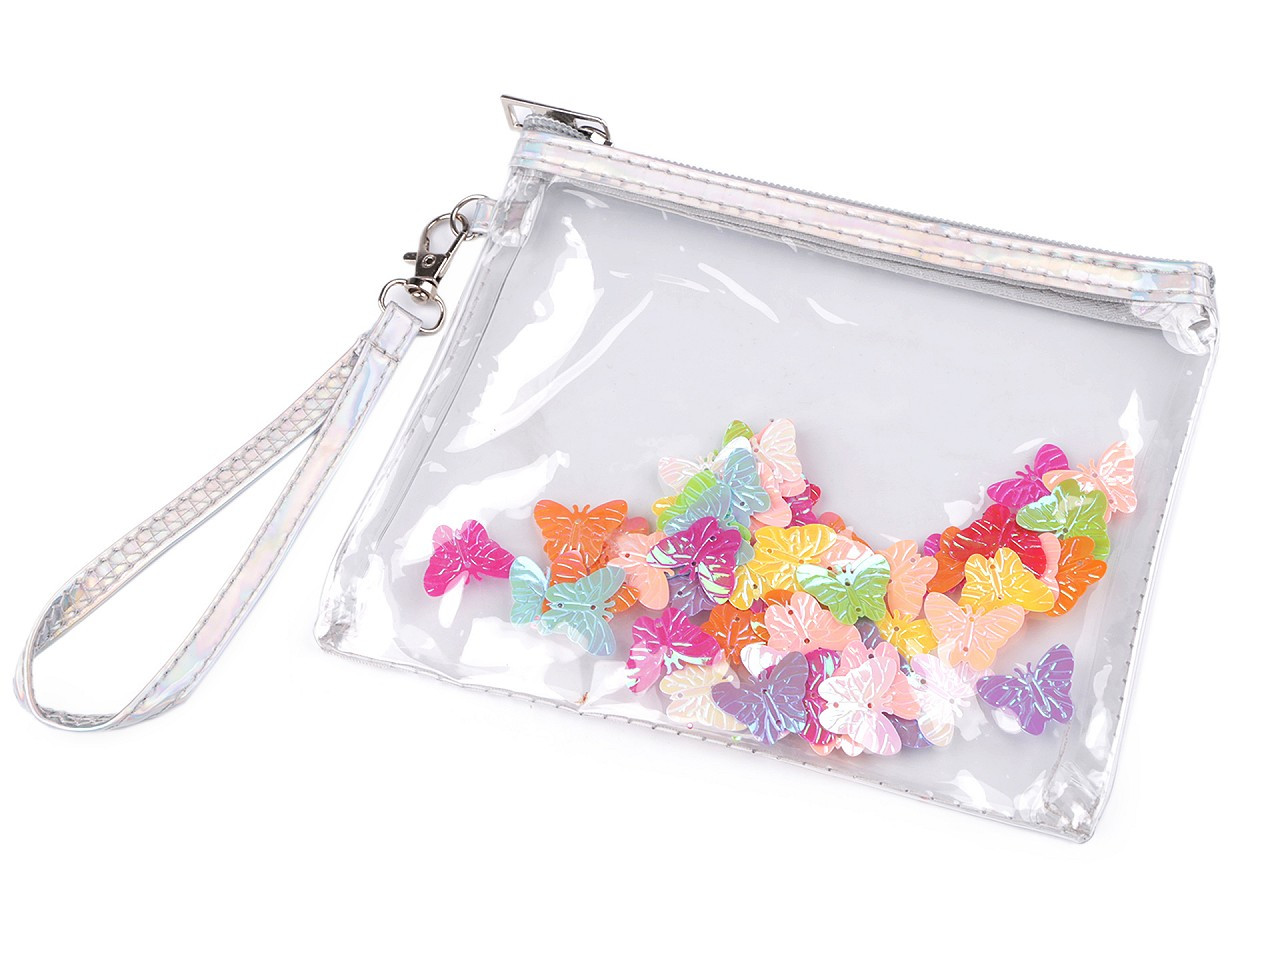 Pouzdro / kosmetická taška s přesýpacími flitry 14,5x17 cm, barva 2 multikolor motýl